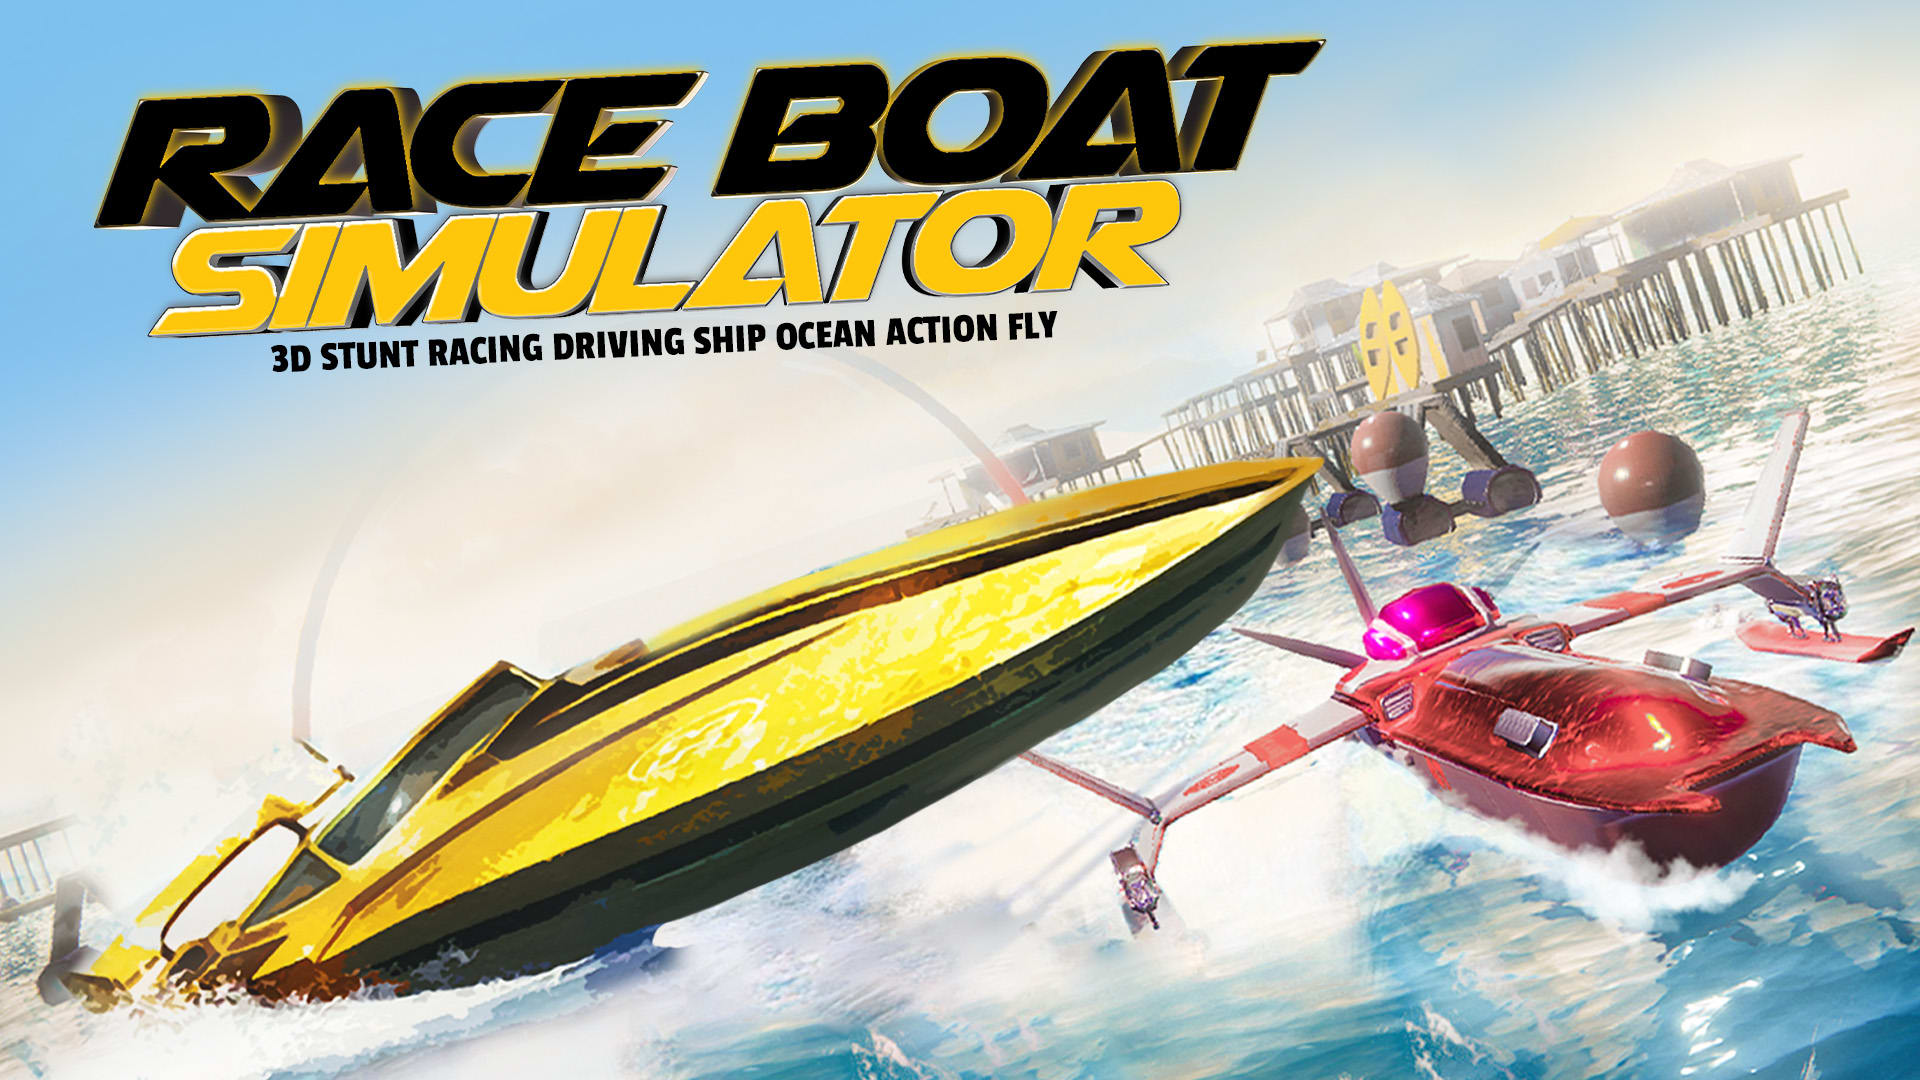 Race Boat Simulator - 3D Stunt Racing Driving Ship in Ocean